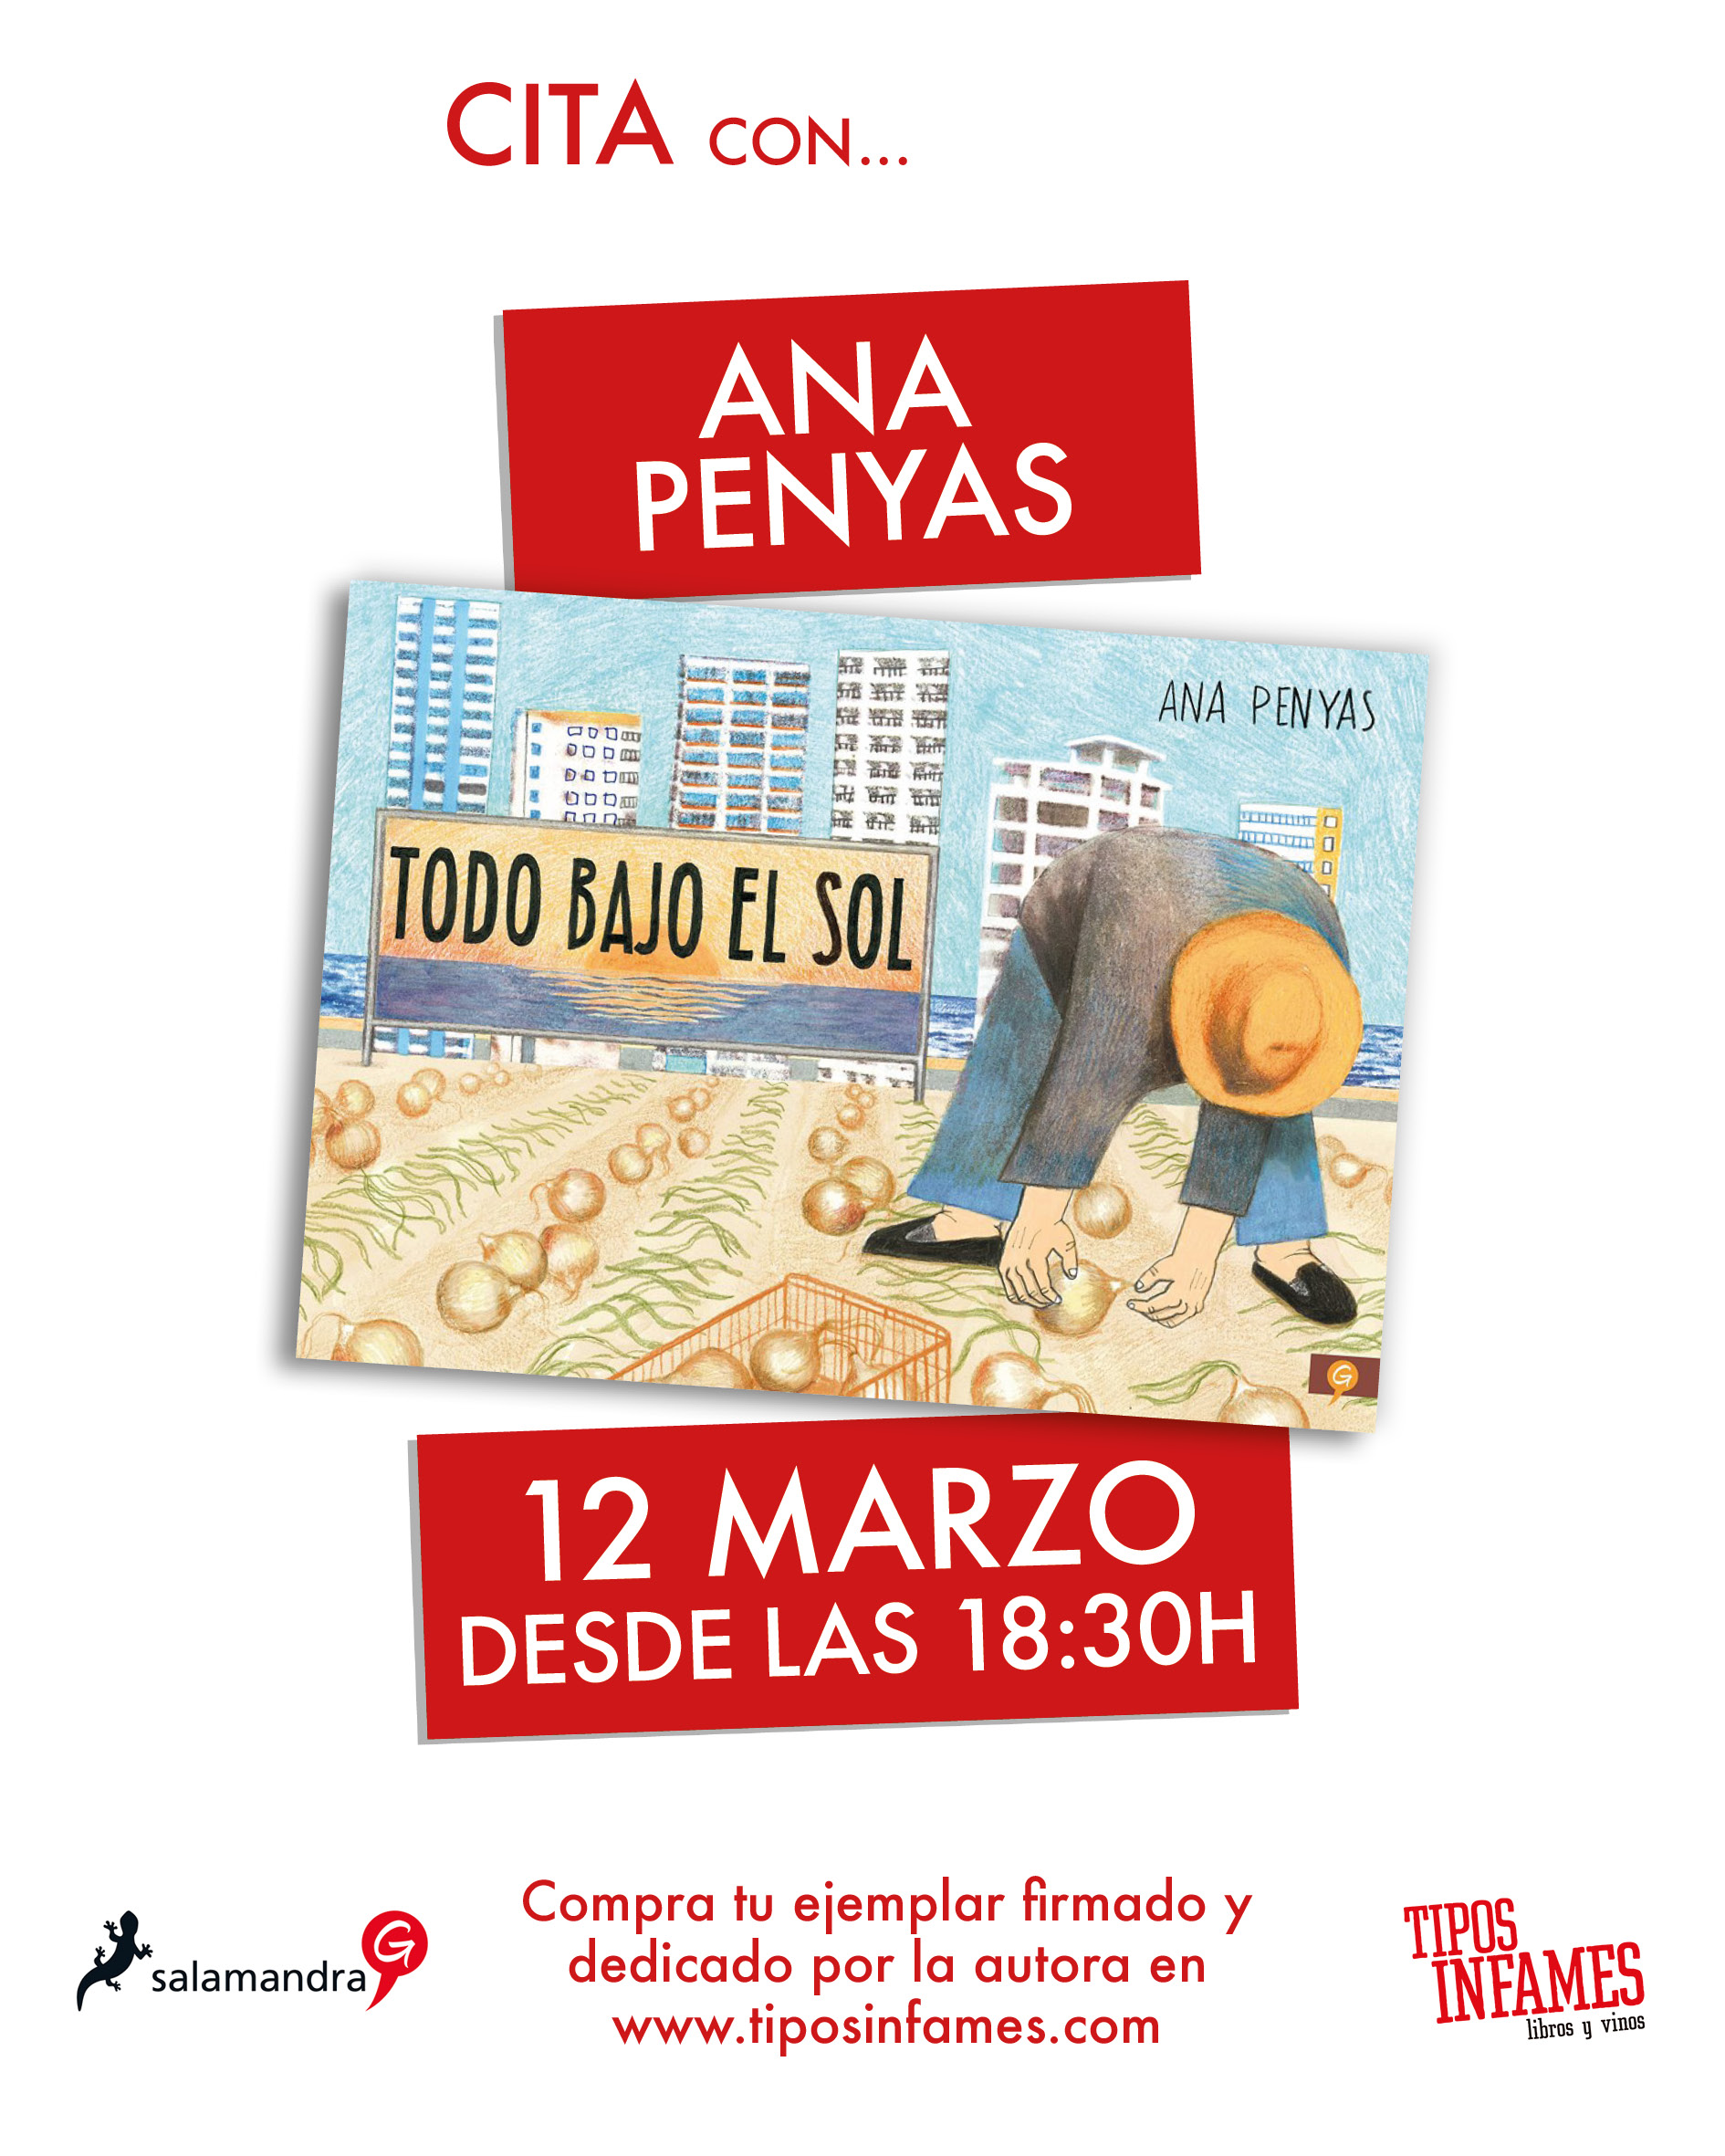 Cita con... Ana Penyas